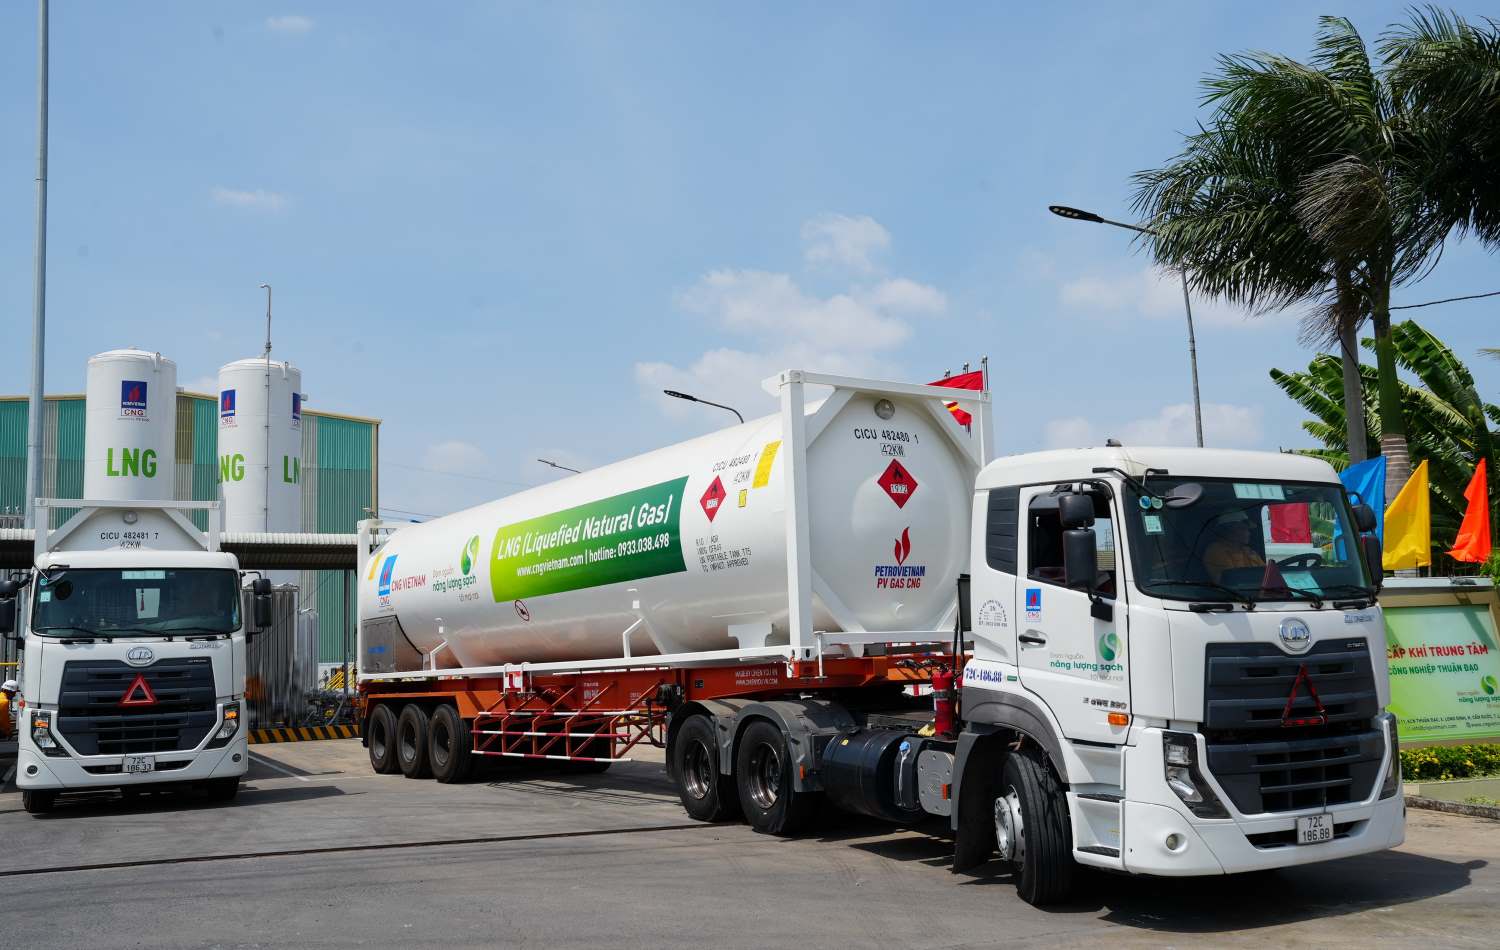 Trạm tái hóa khí LNG Thuận Đạo tiếp nhận chuyến hàng đầu tiên. Ảnh: Hồ Cầm